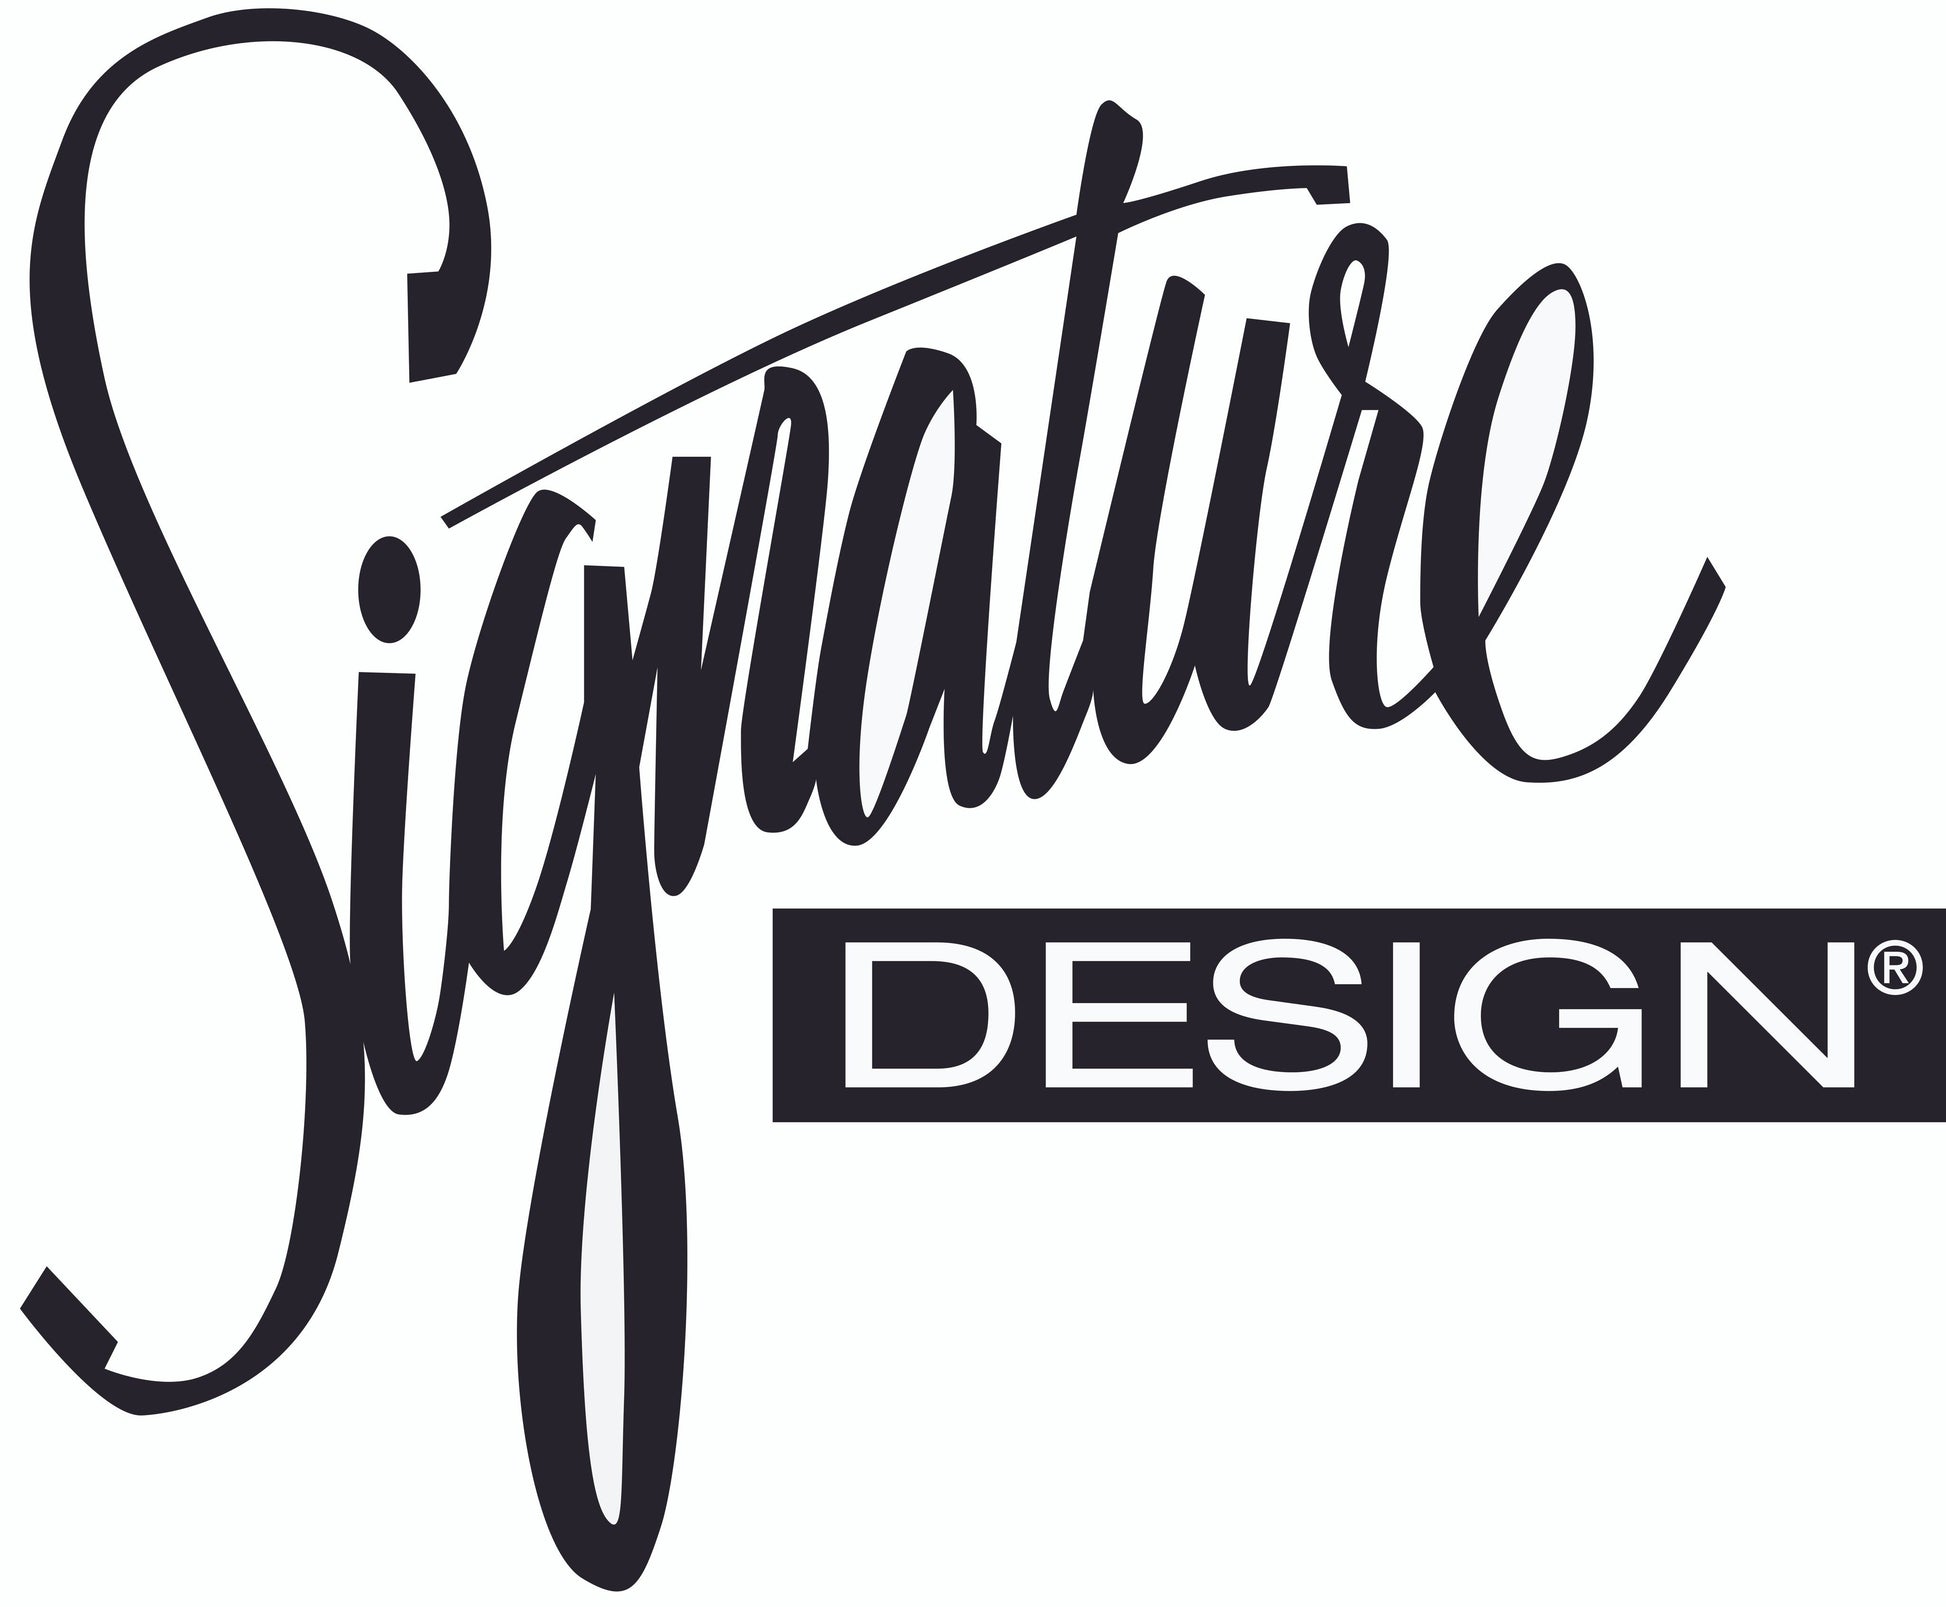 Caretti Ottoman Signature Design by Ashley®